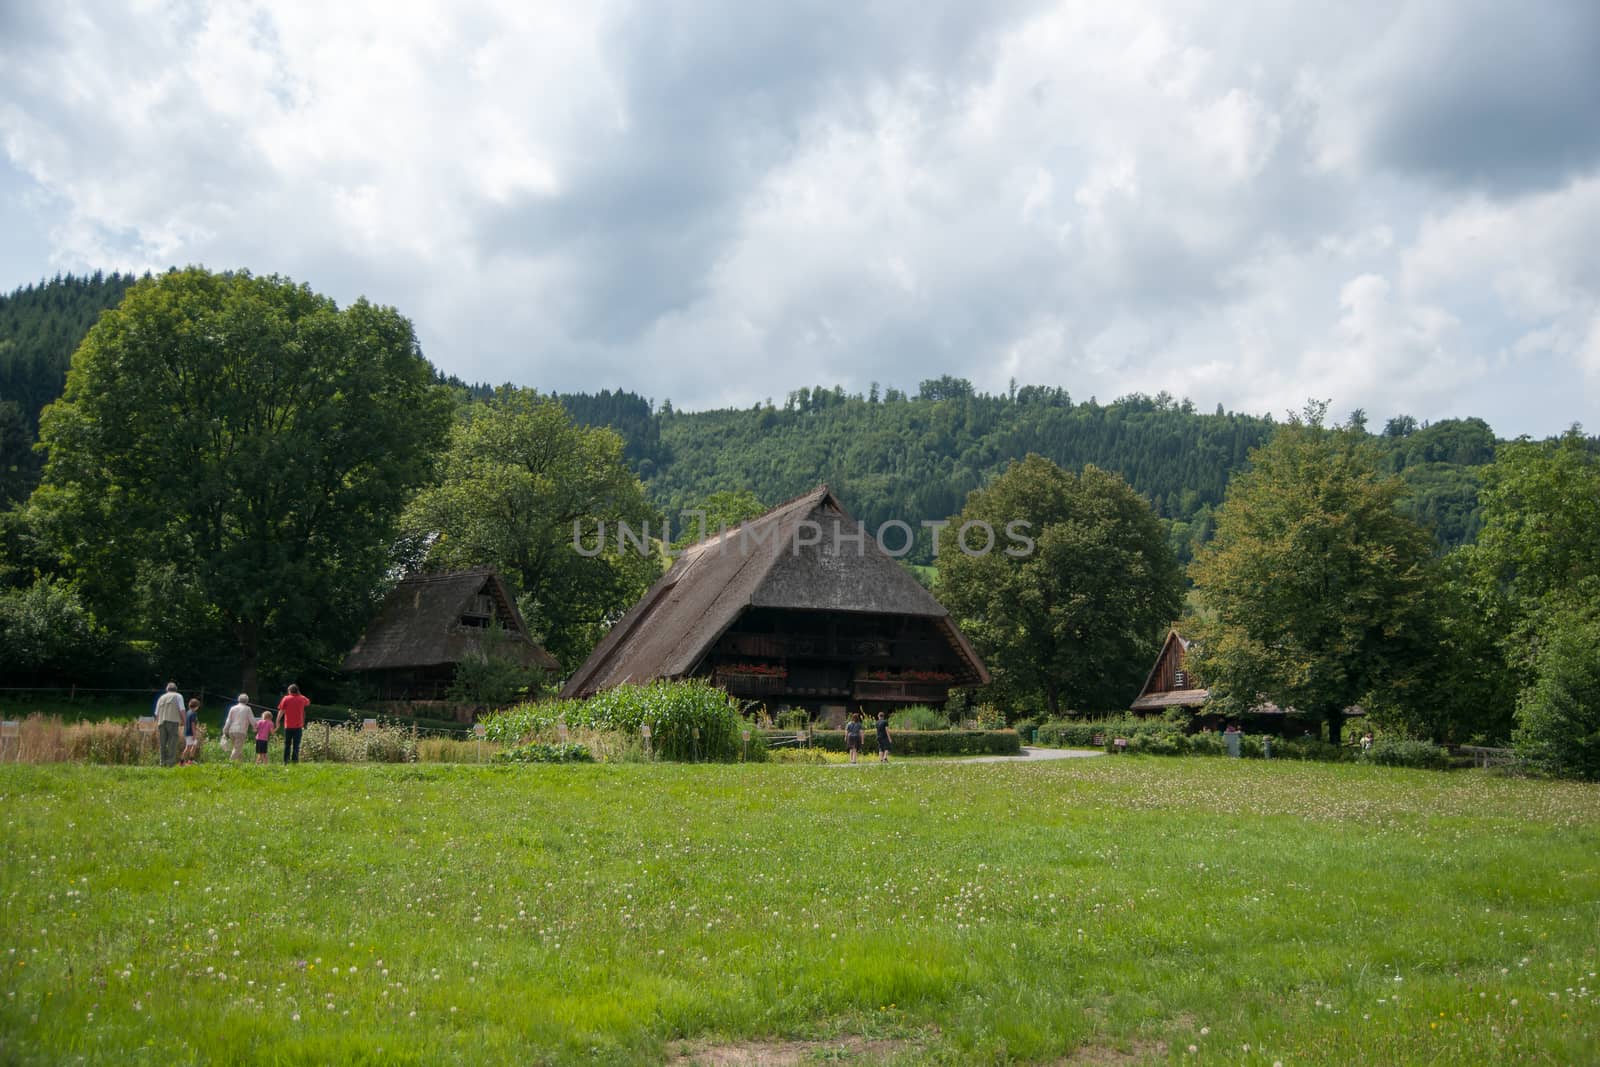 schwarzwald forest villages landscape in germany tourism